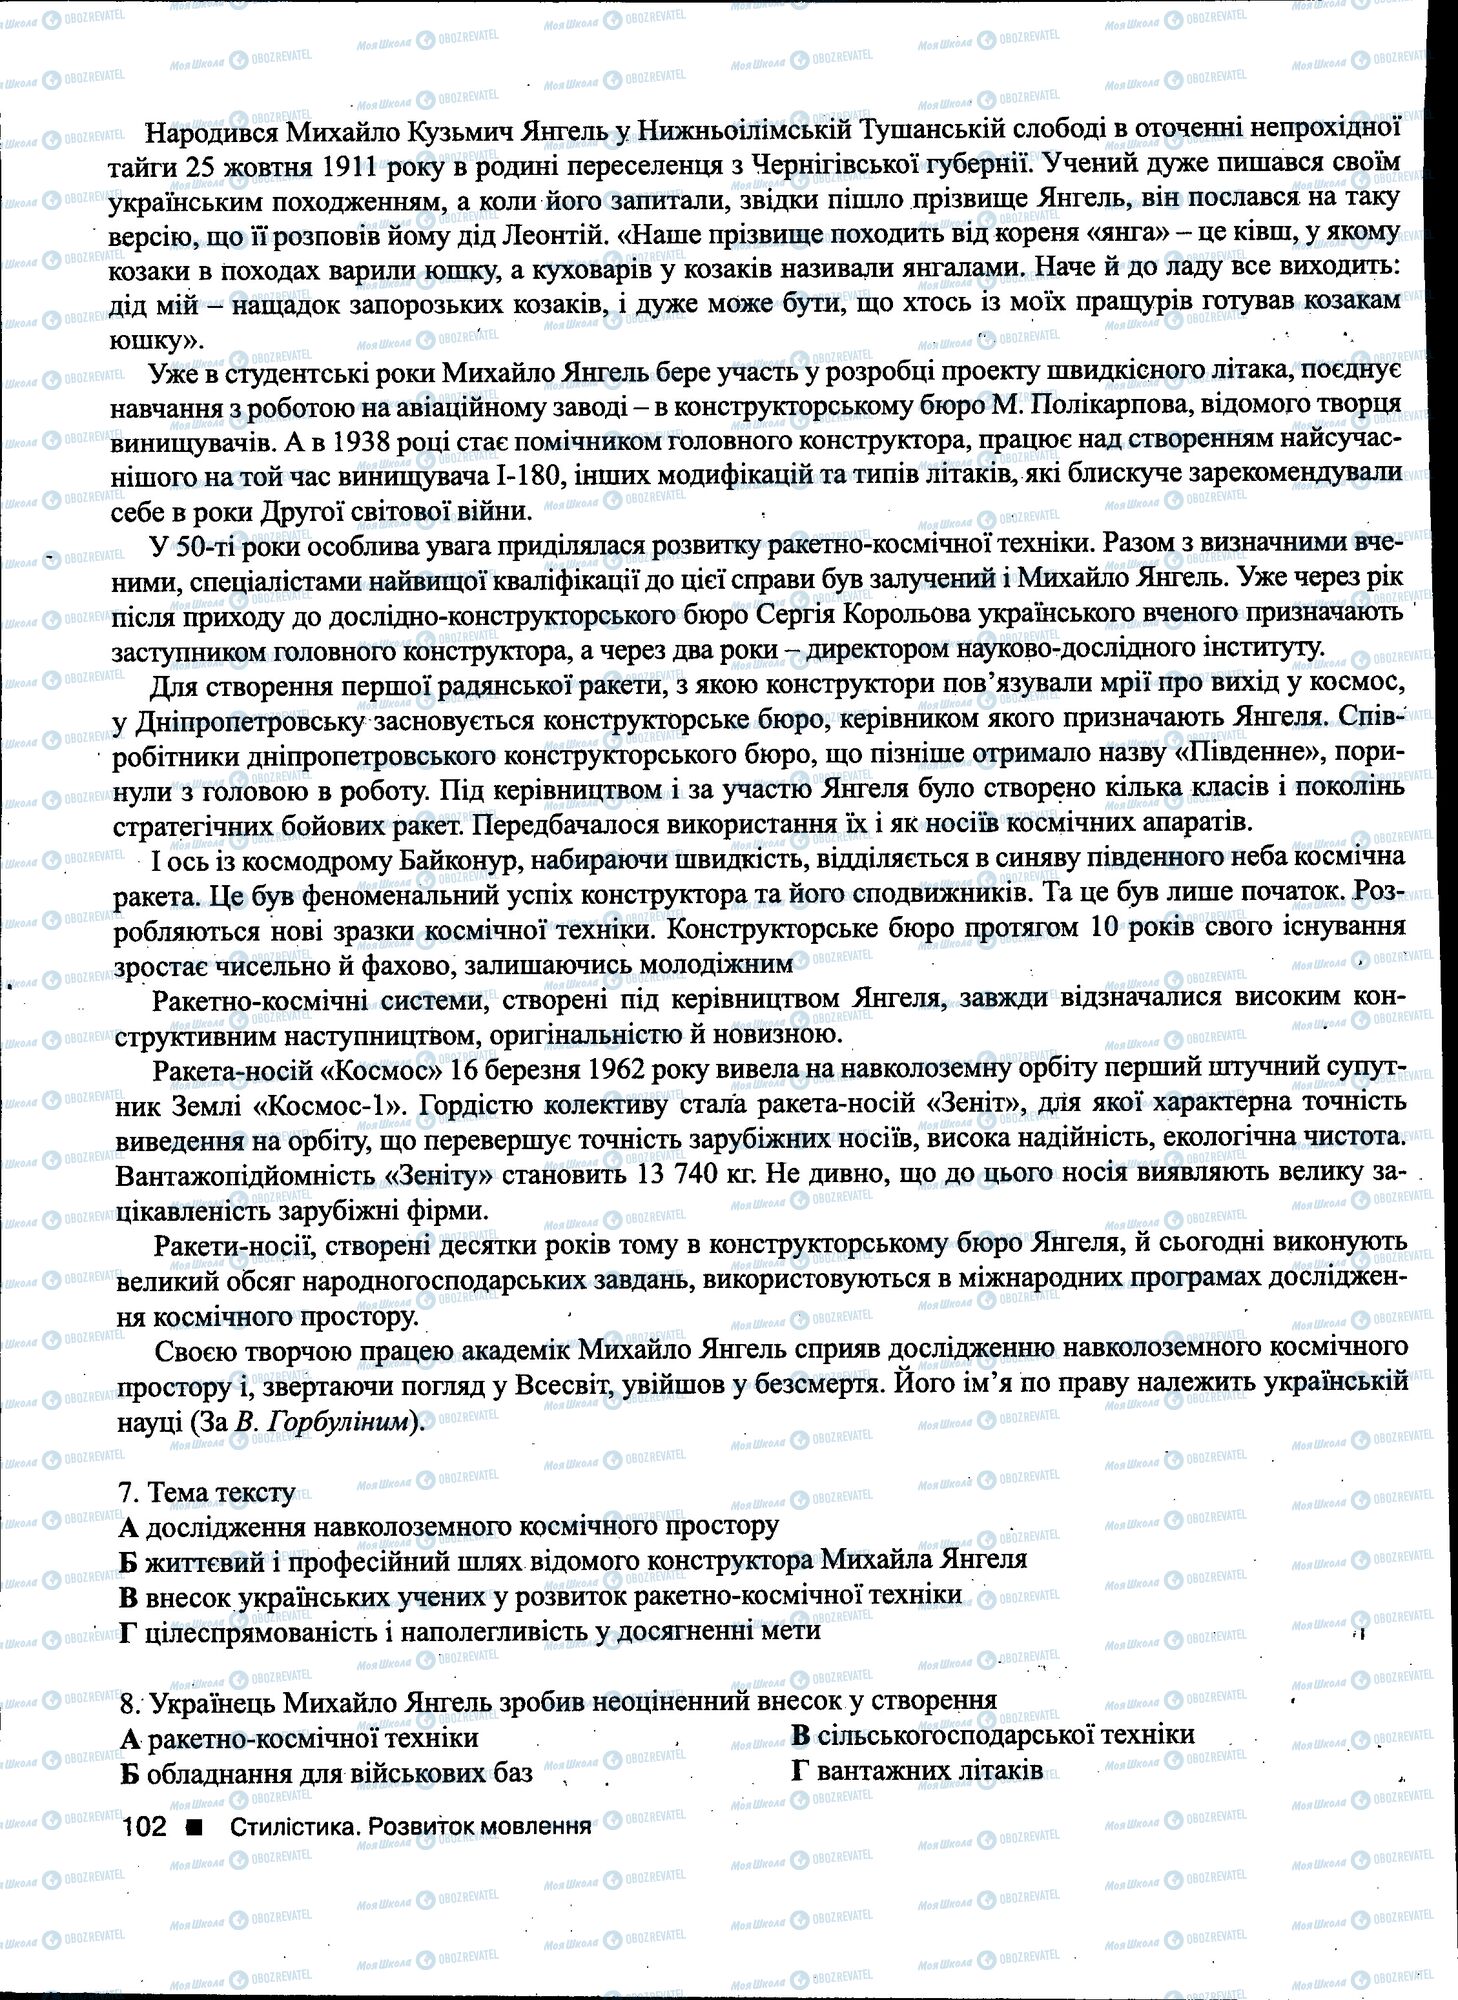 ДПА Укр мова 11 класс страница 102